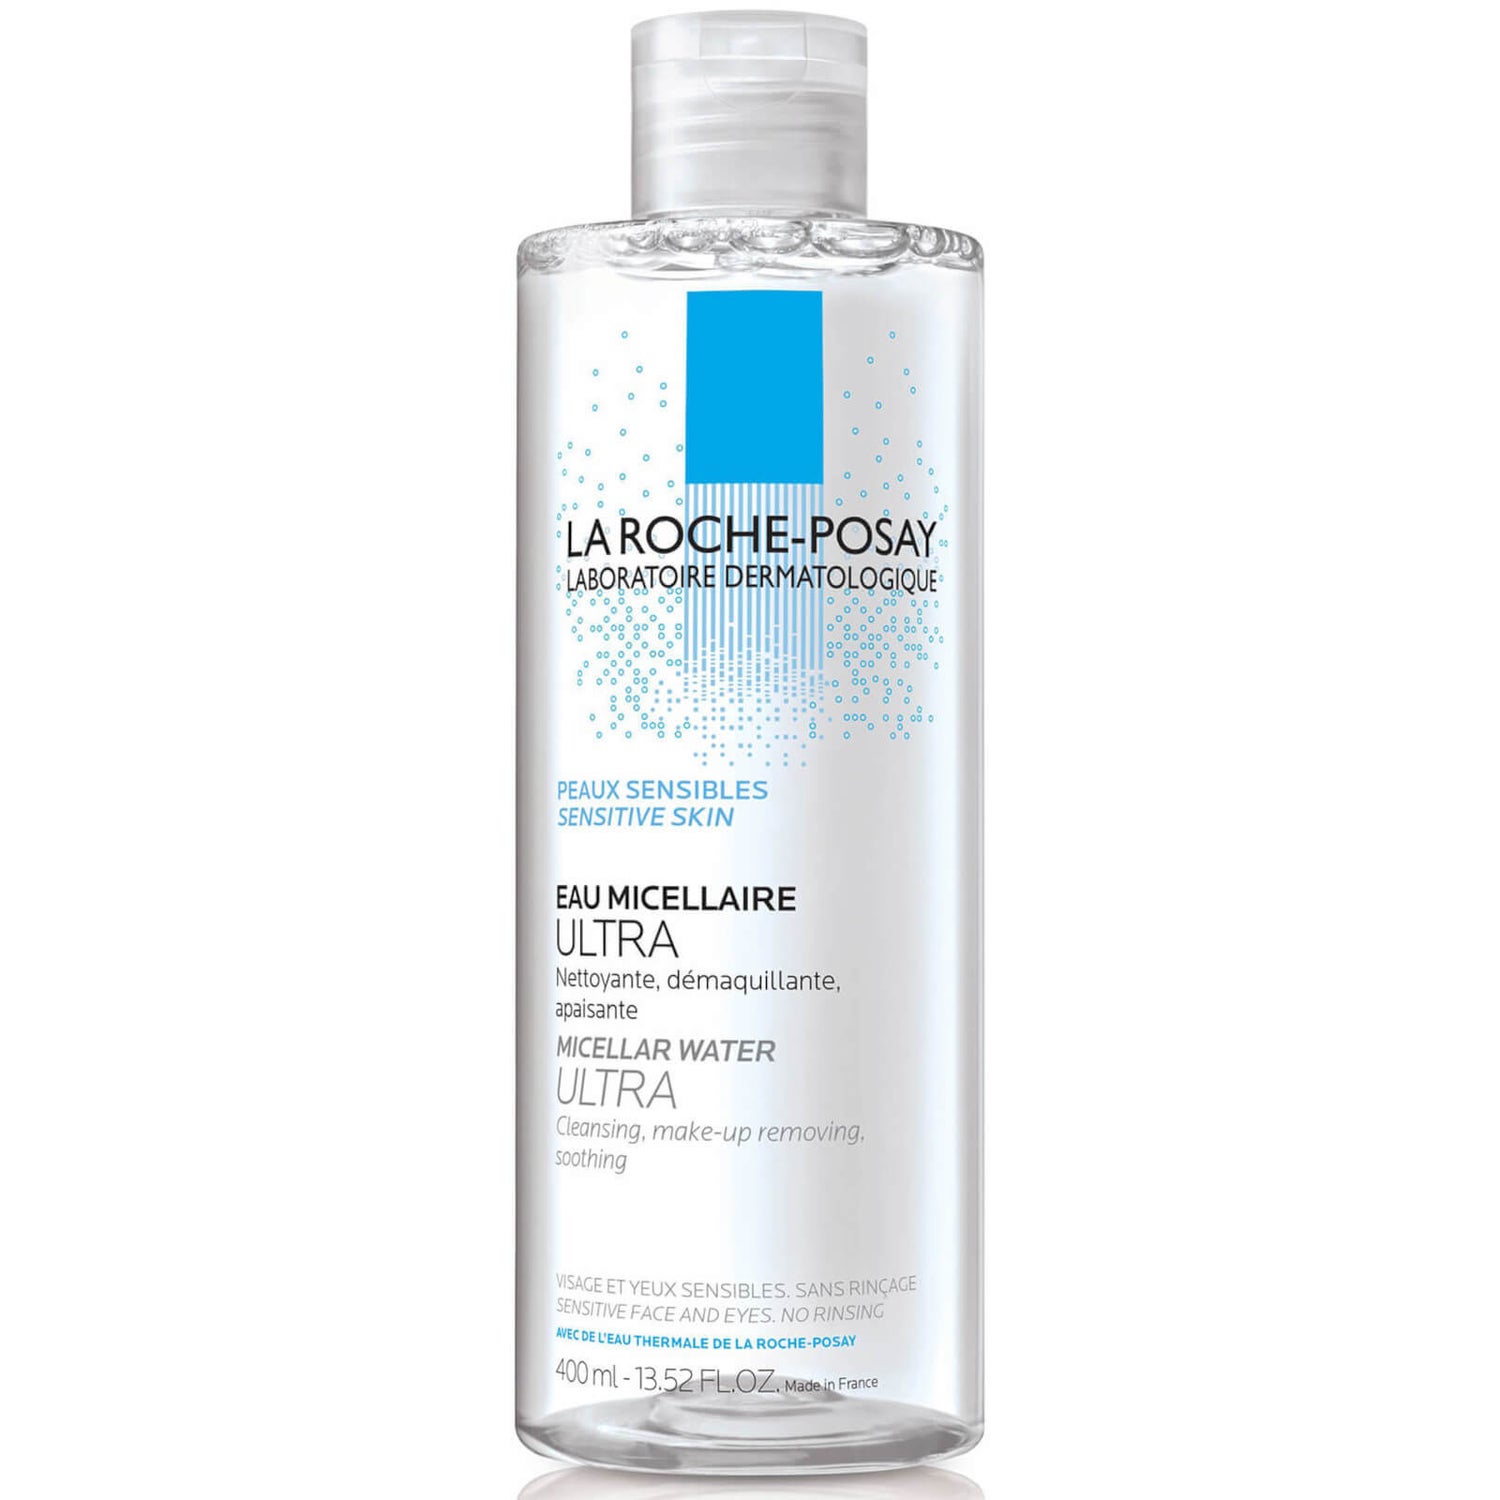 La Roche-Posay Micellar Water Ultra for Sensitive Skin (13.52 fl. oz.)